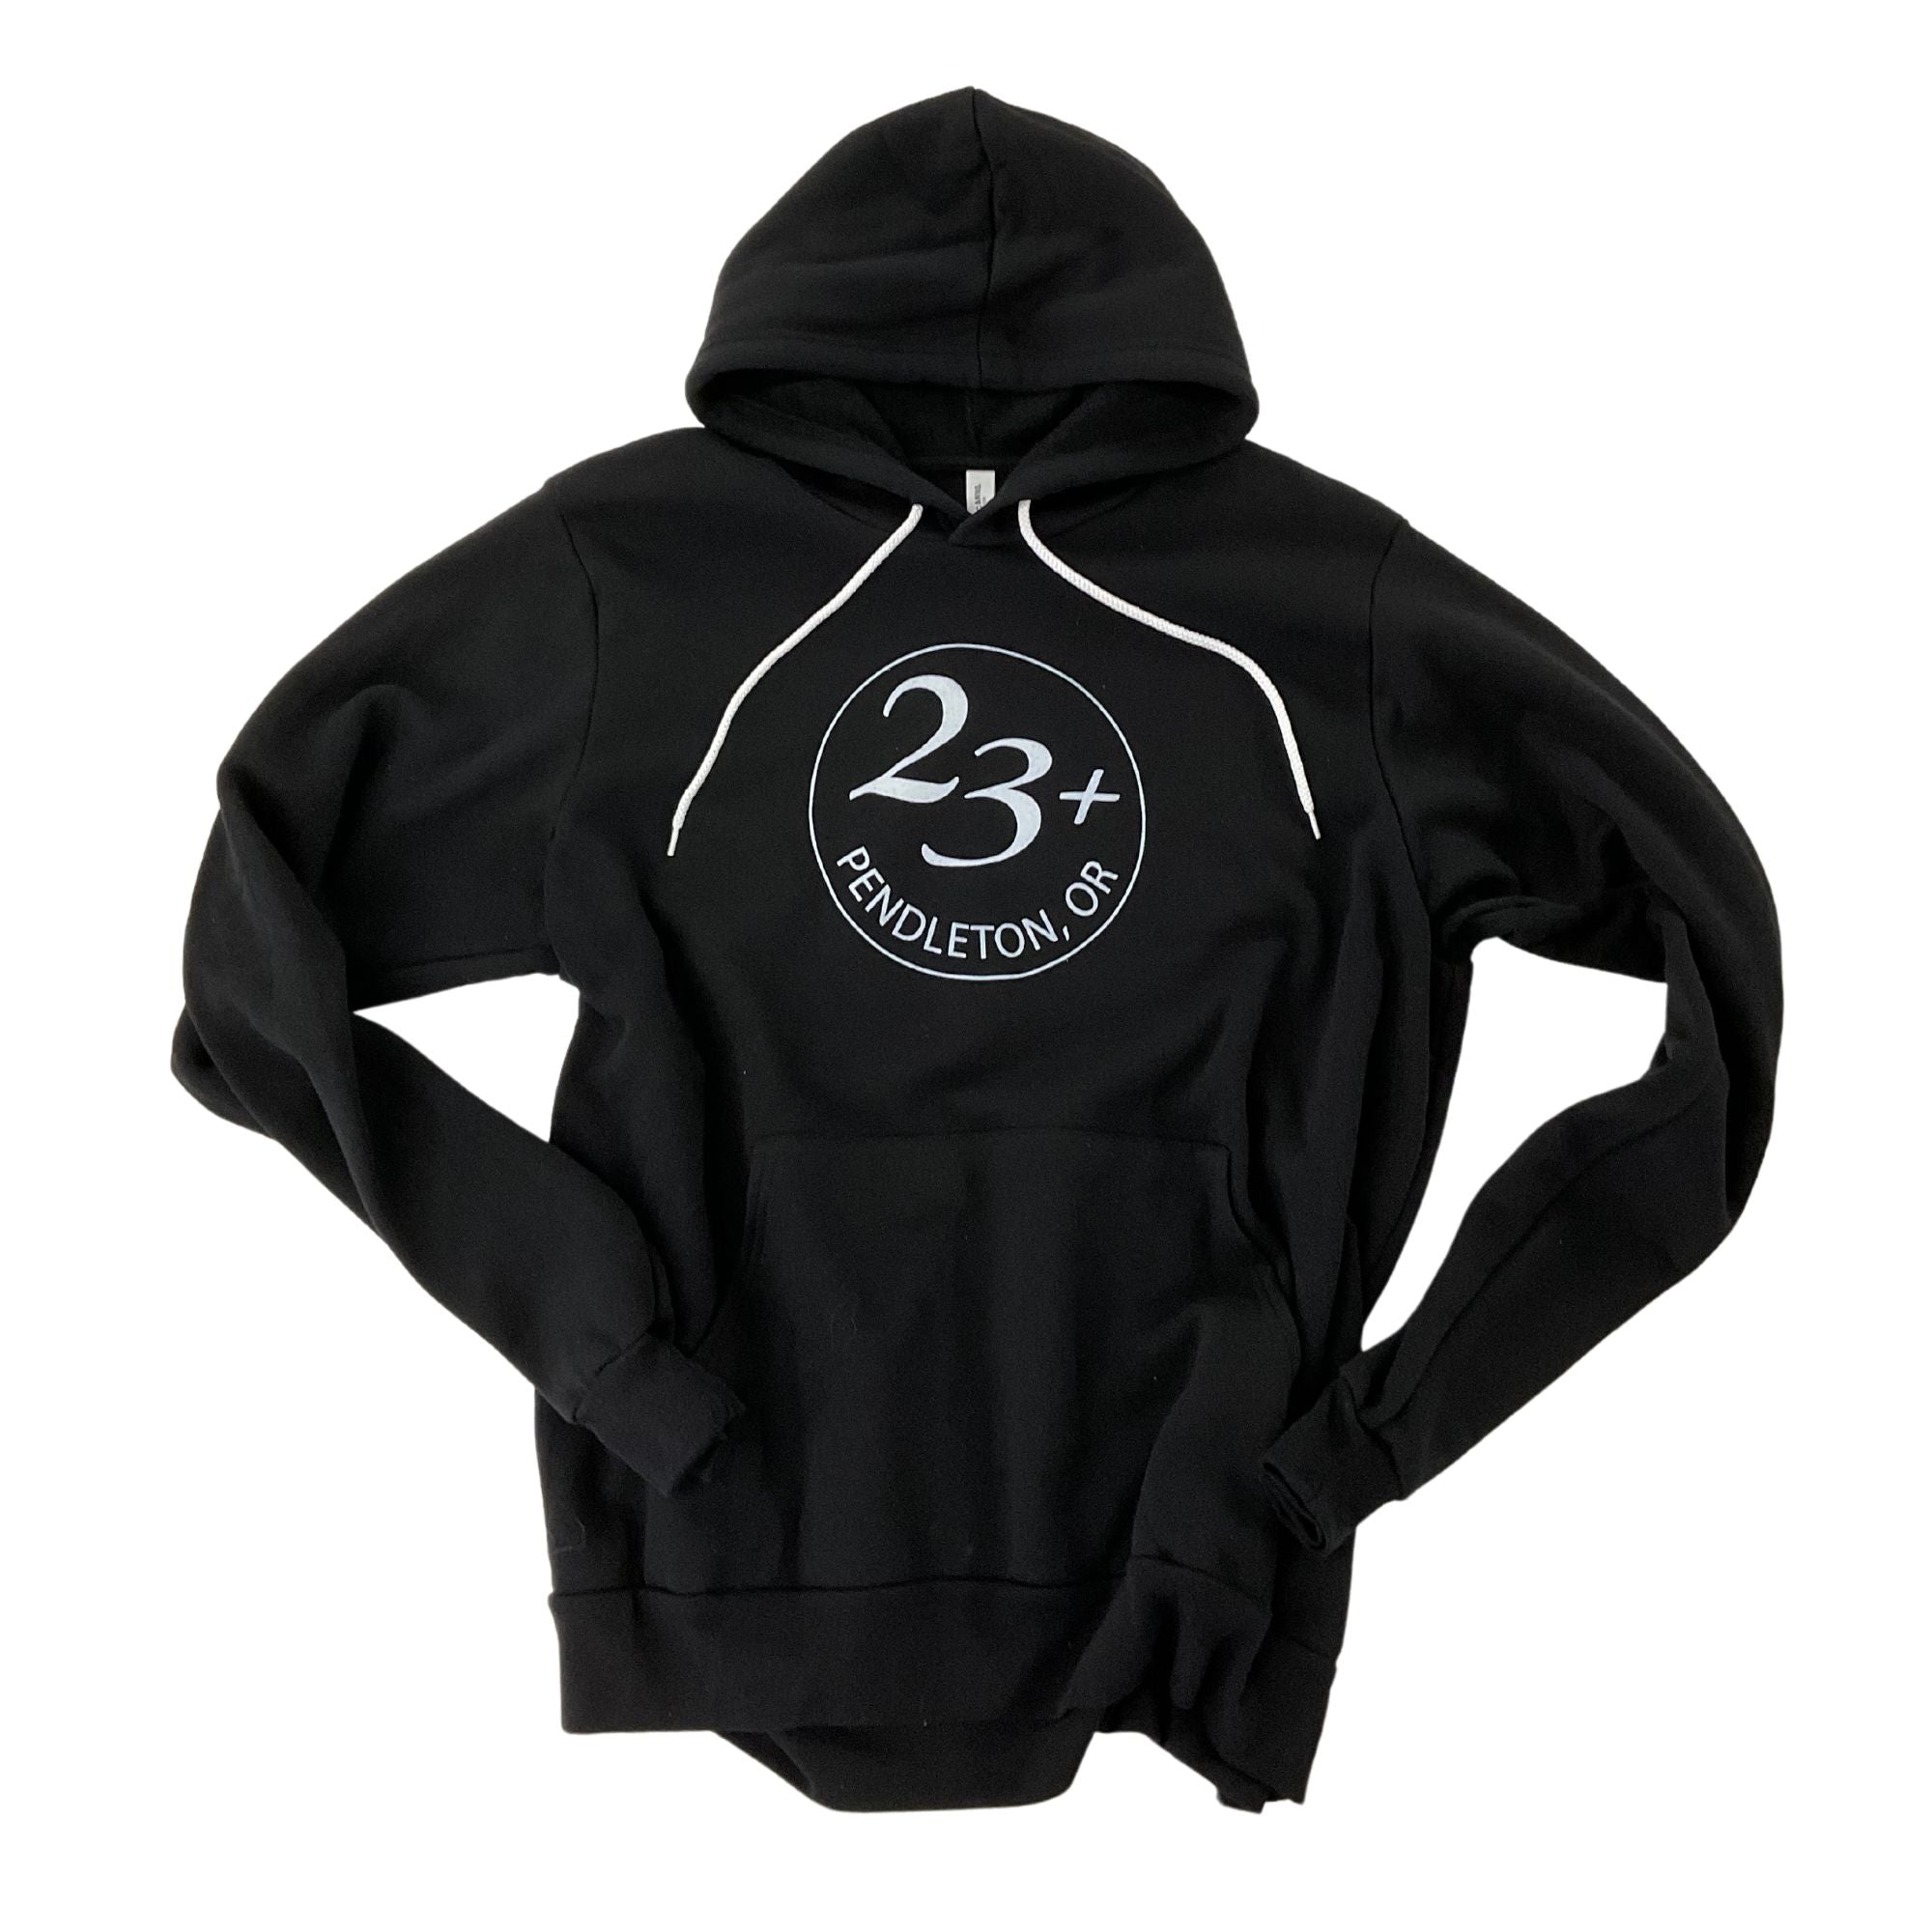 23+ Logo Hoodie Sweatshirt - Black